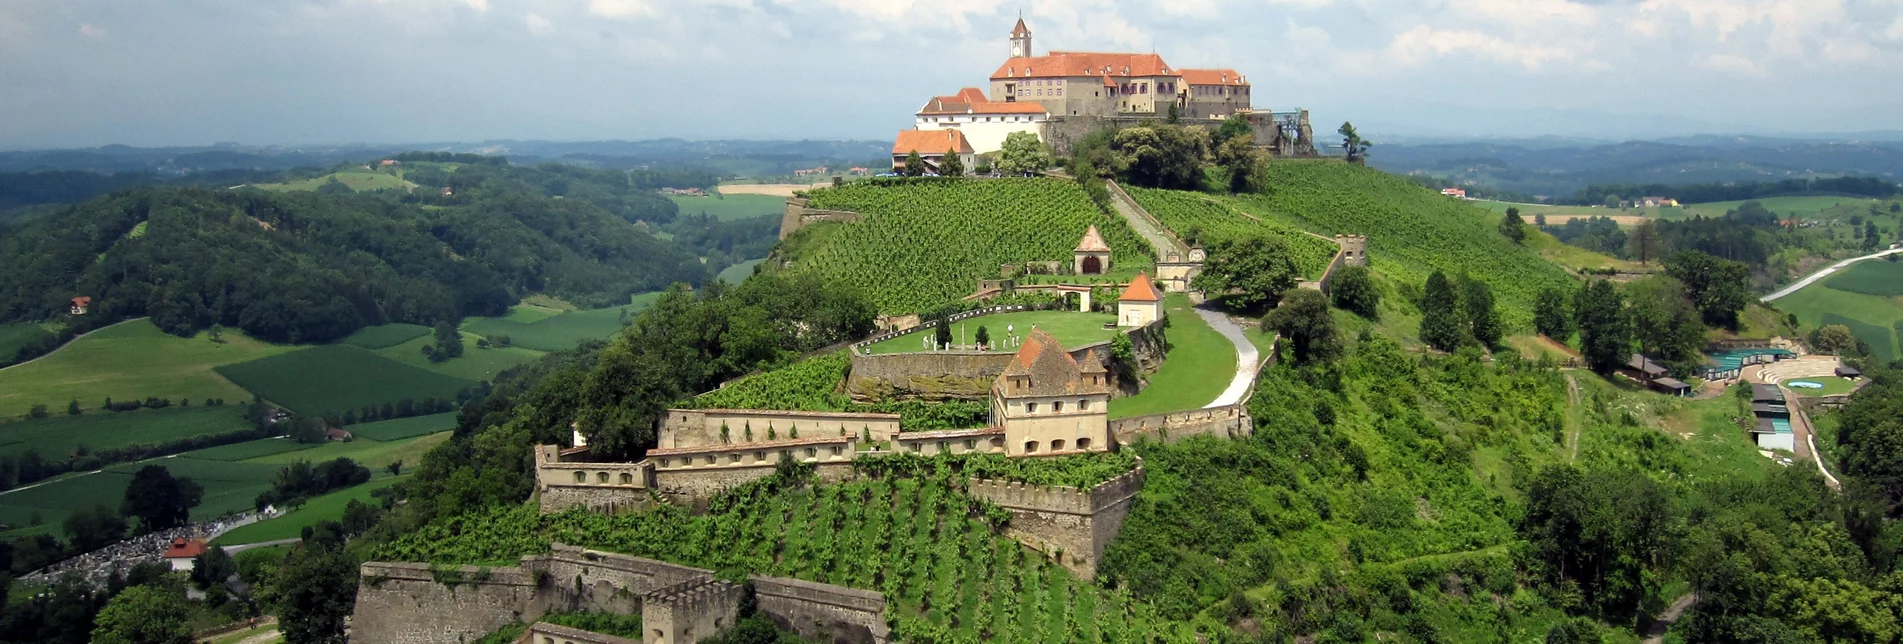 A view of the imposing Riegersburg Castle | © Thermen- & Vulkanland Steiermark | Harald Eisenberger